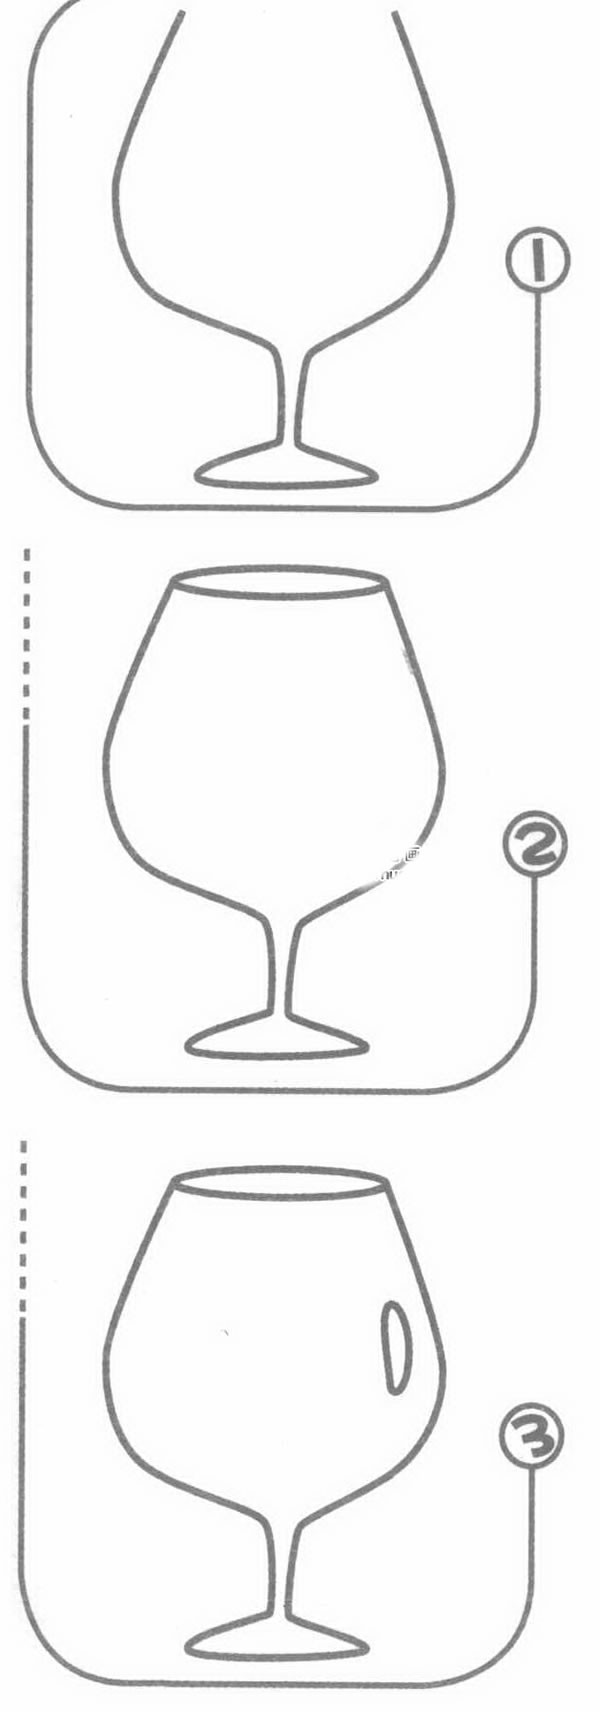 酒杯简笔画图片/画法步骤教程